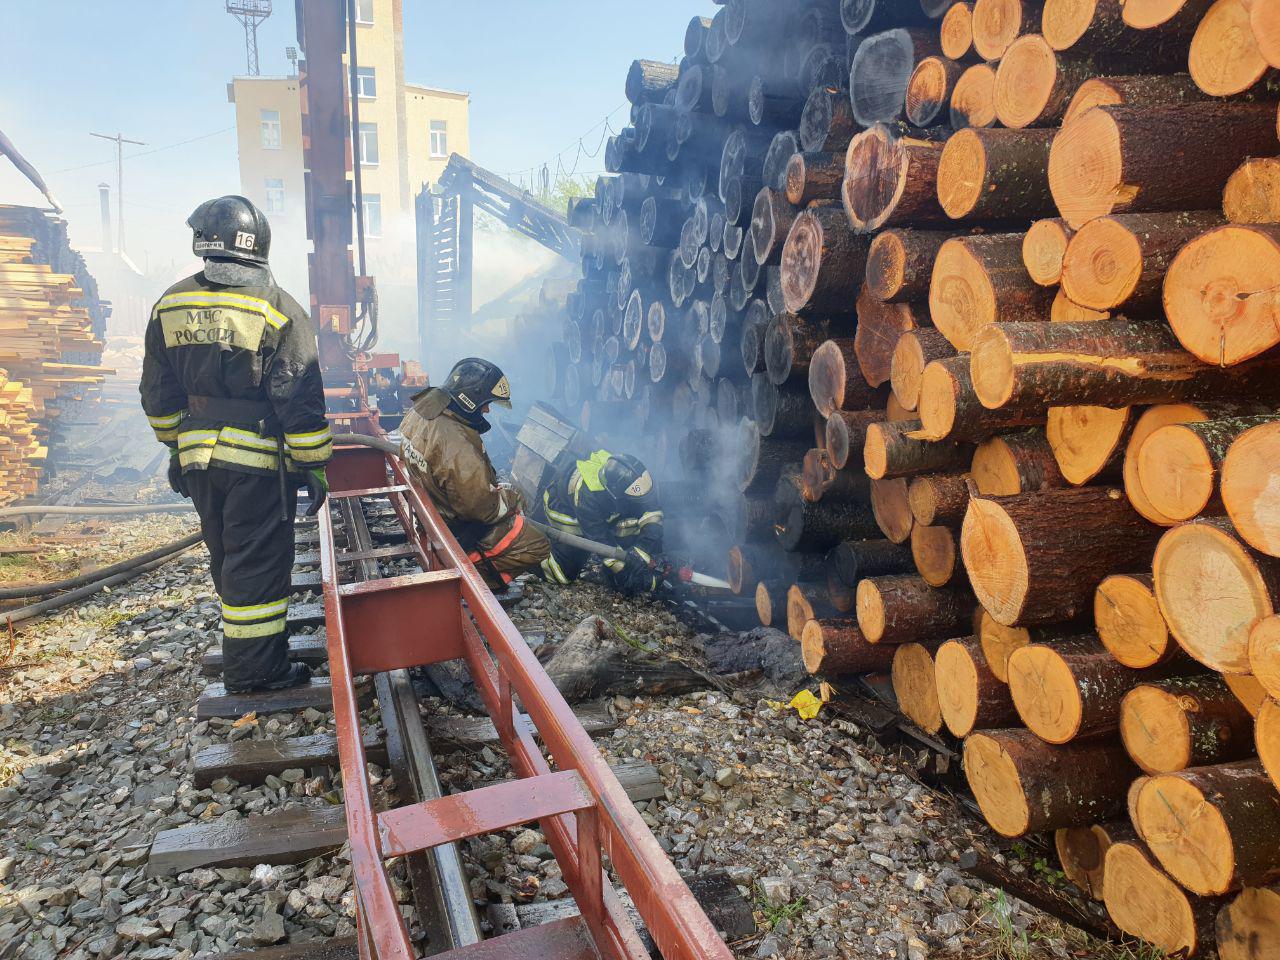 Безопасность, Томские новости, пожары безопасность не горят леса штабеля происшествия Прокуратура и МЧС начали проверки лесопромышленных предприятий после пожаров на лесопилках